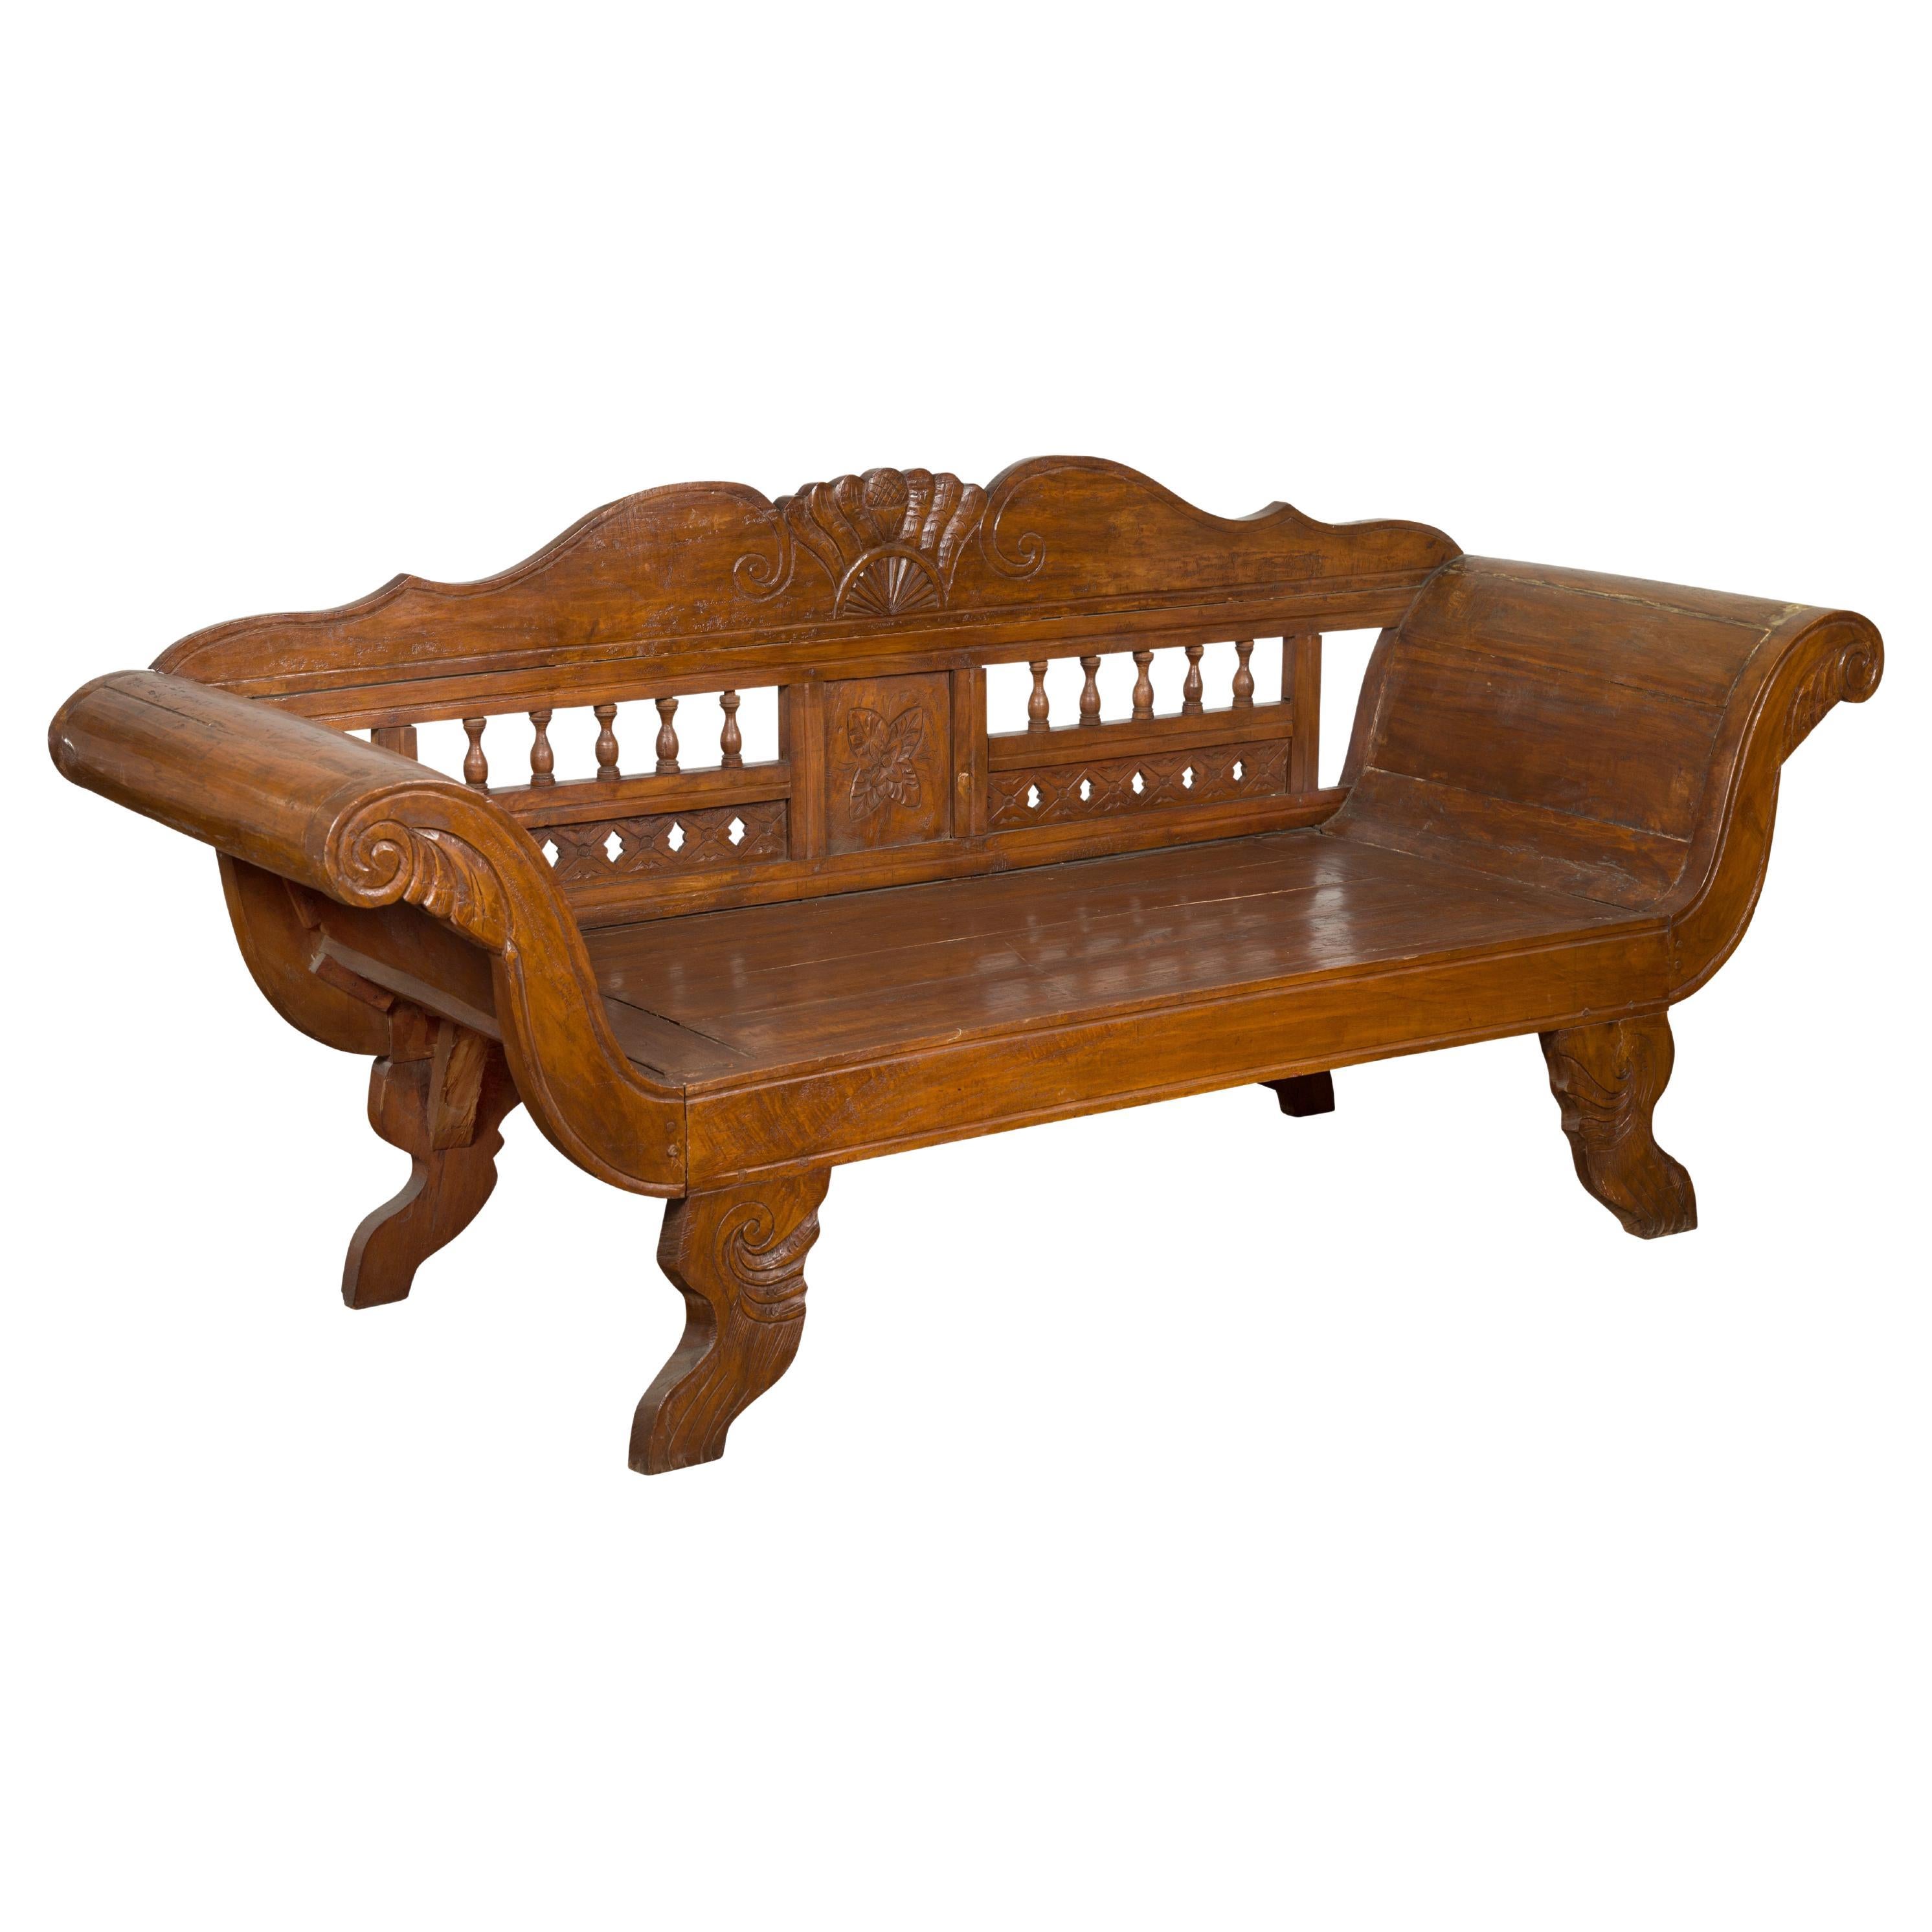 Javanisches Teakholz-Sofa mit geschnitztem Dekor und ausladenden Armlehnen